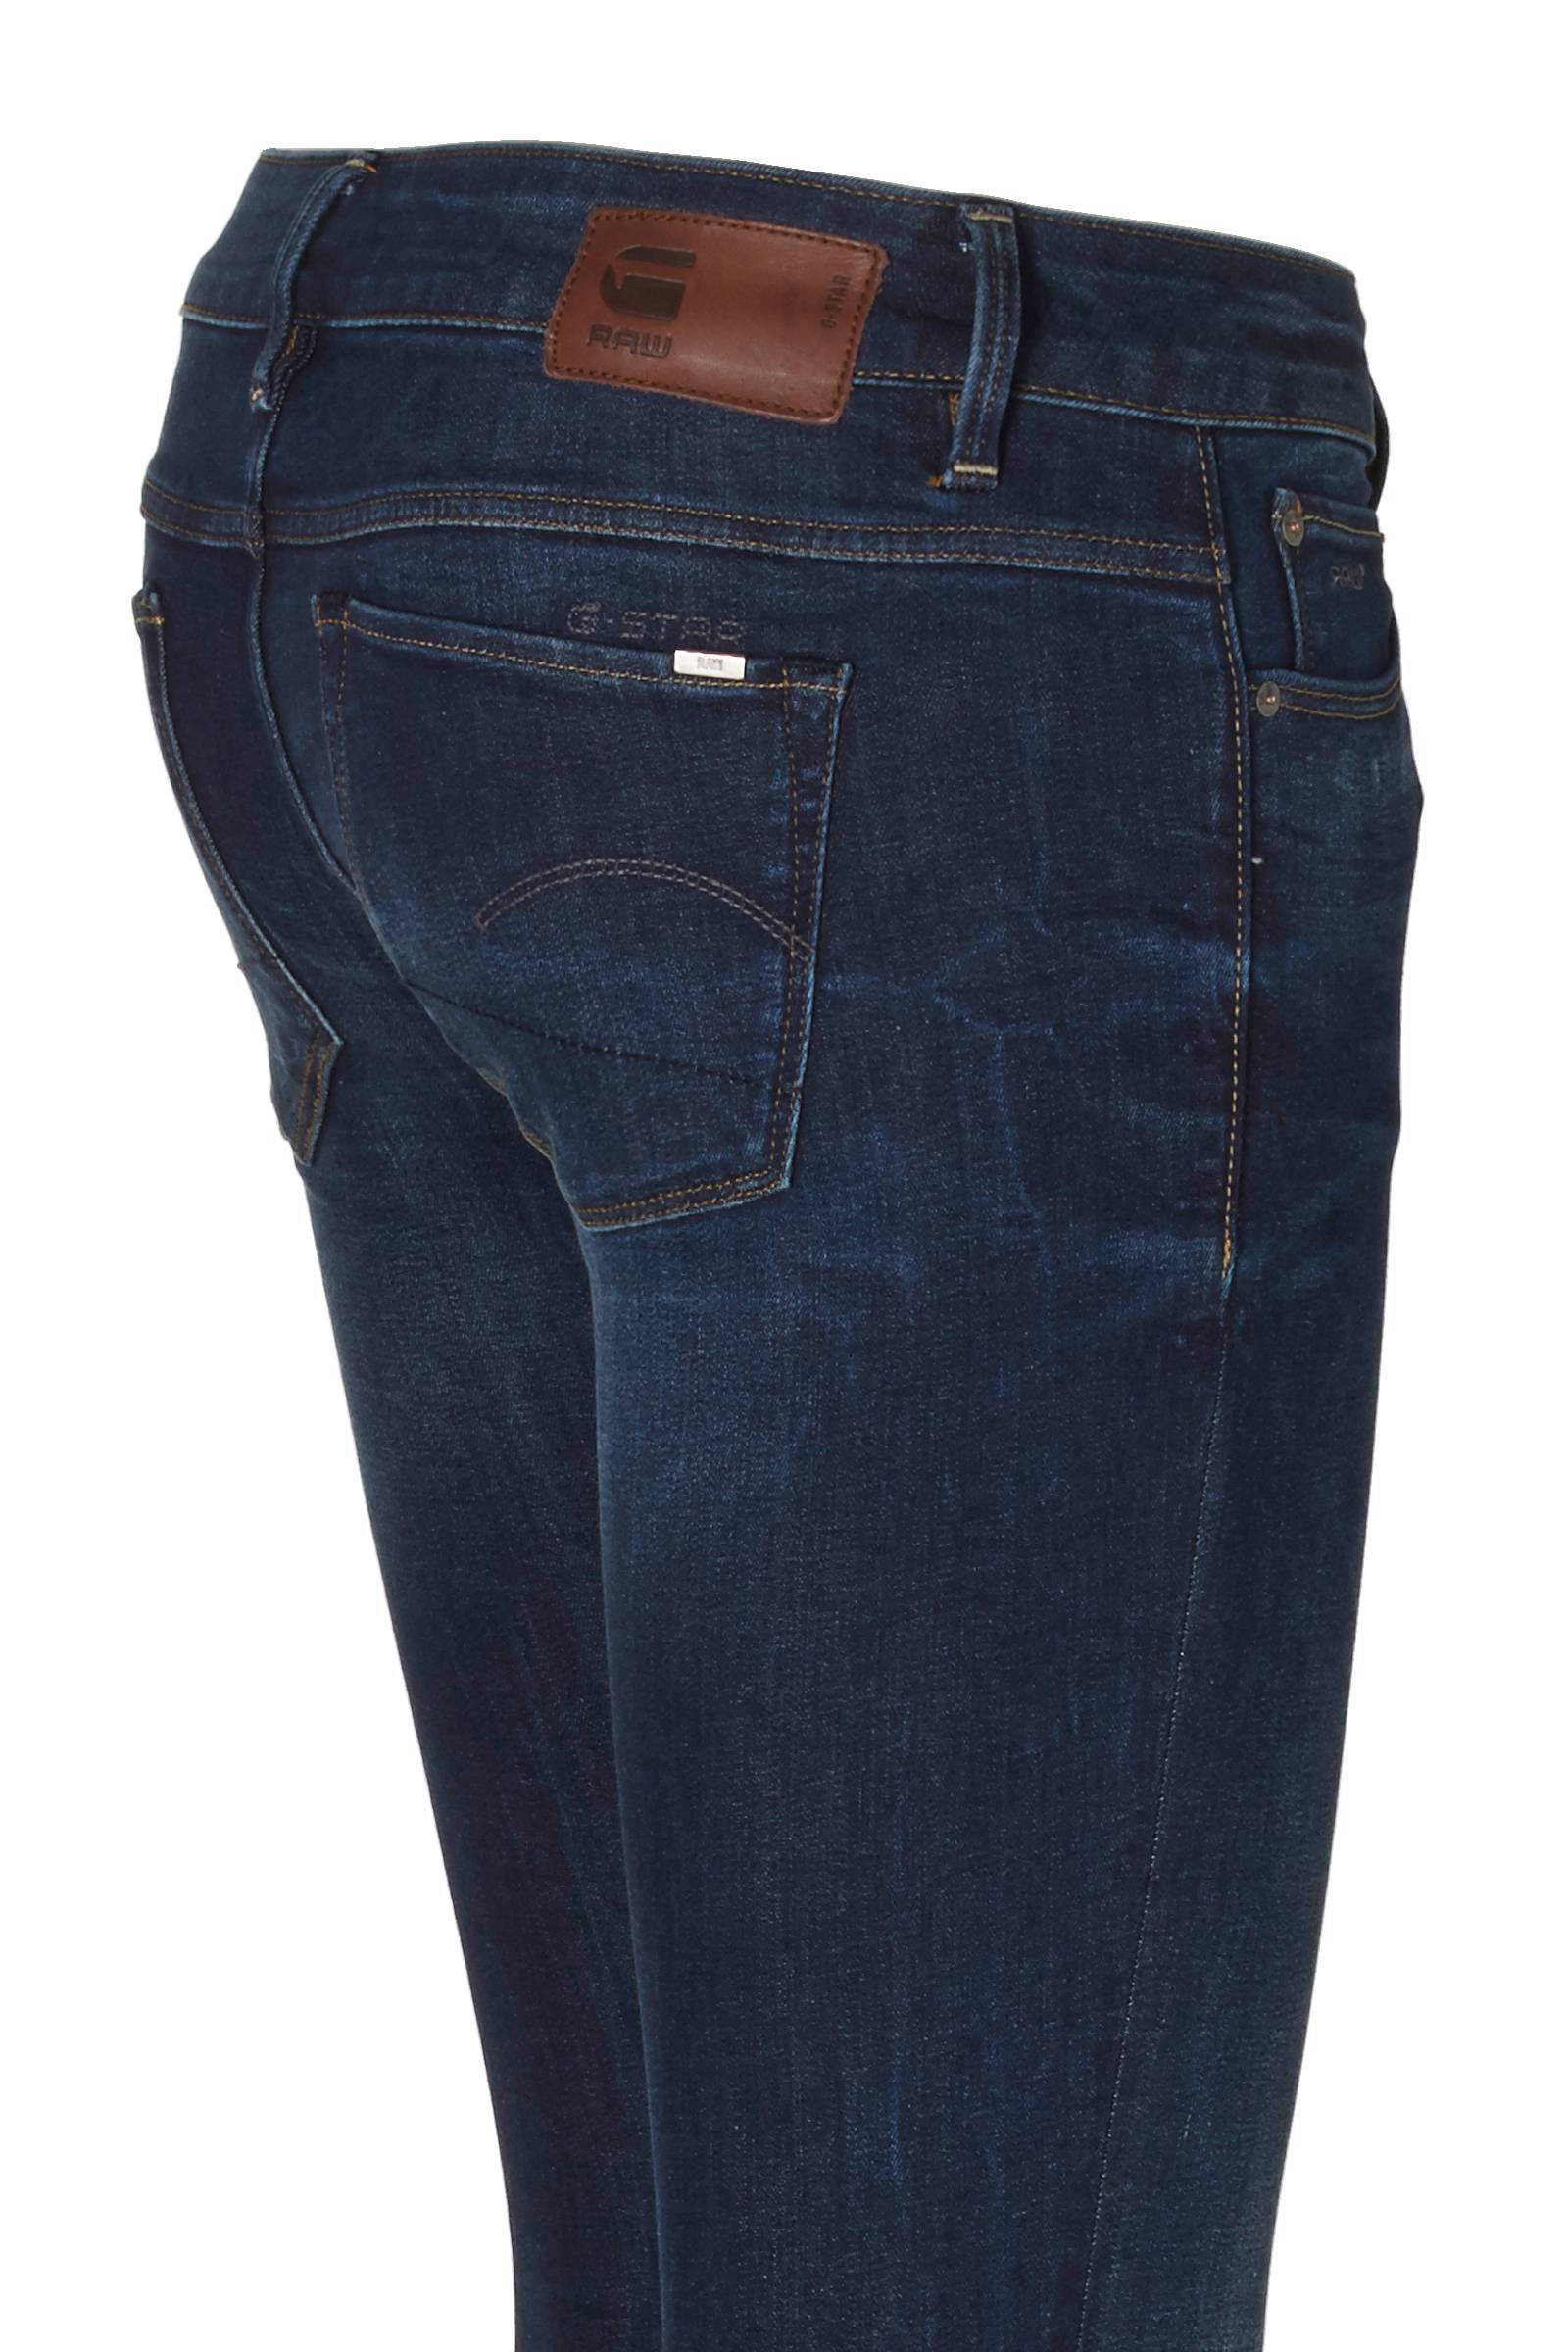 g star 3301 low waist skinny jeans